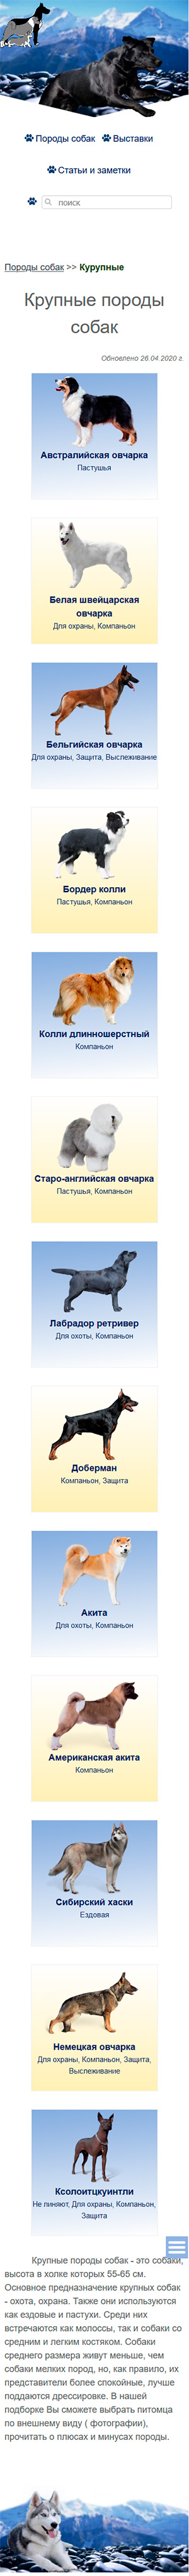 Сайт о породах собак- мобильная версия